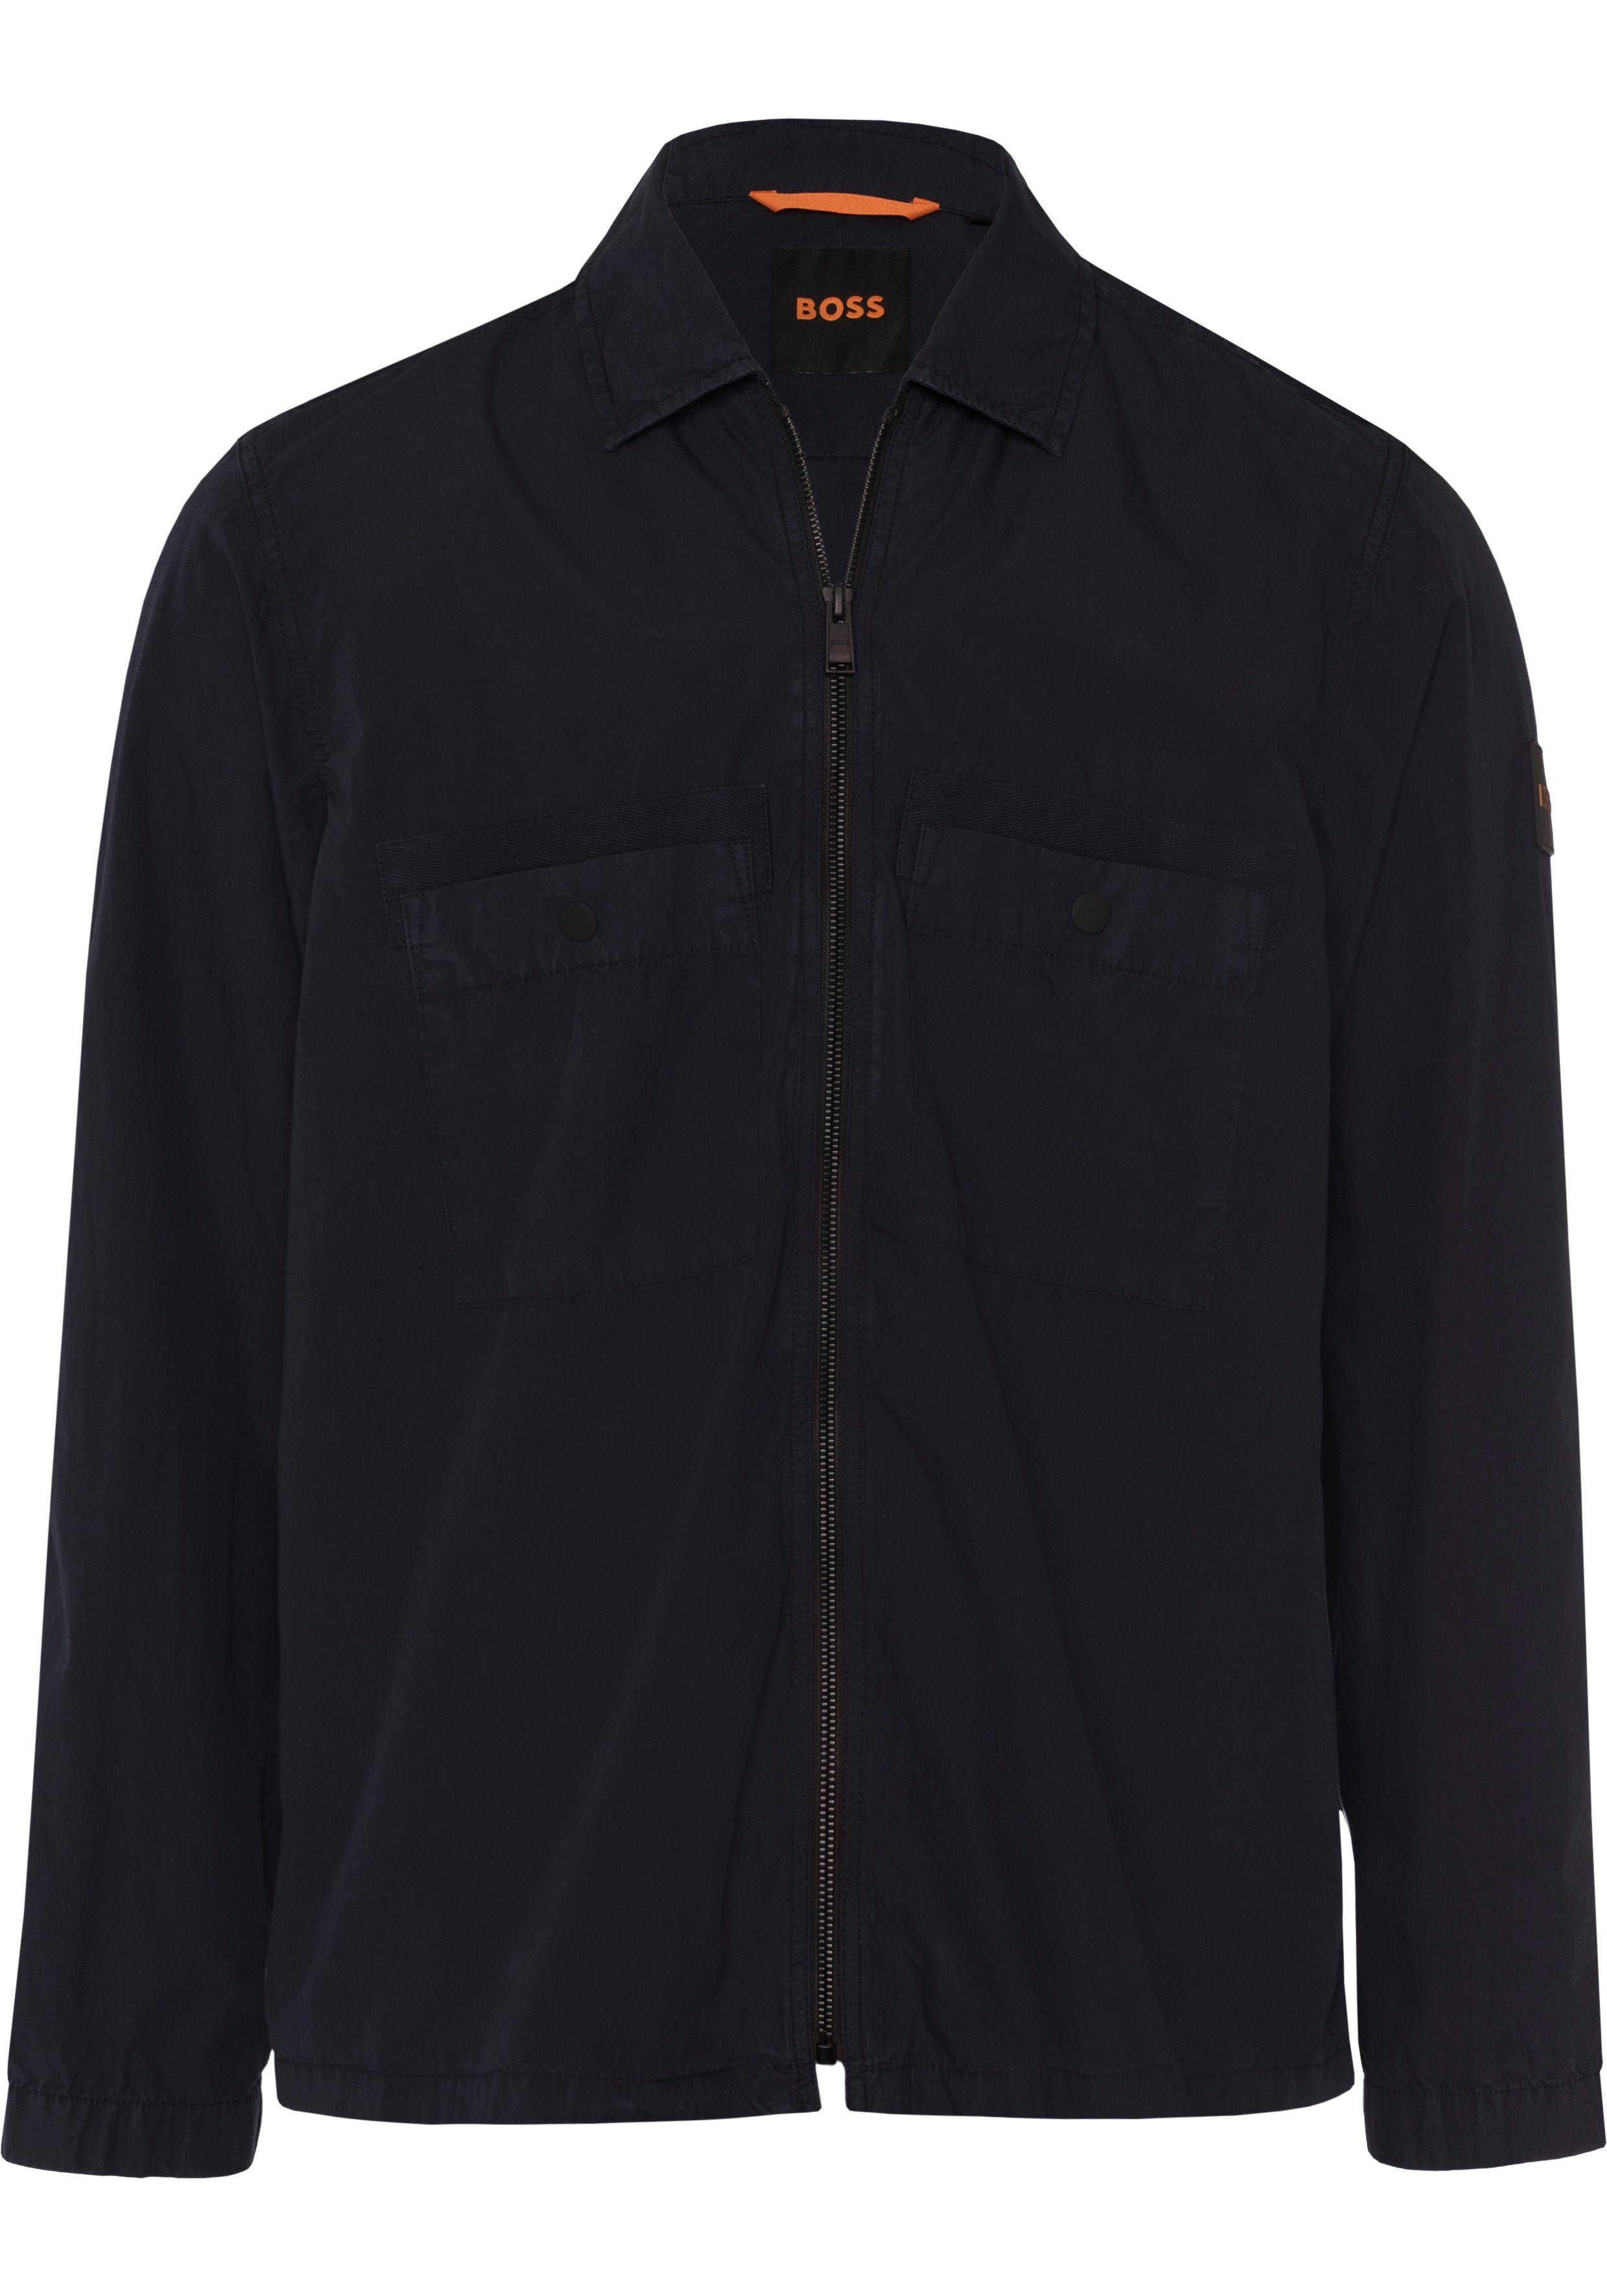 BOSS ORANGE Langarmshirt mit Label-Kontraststreifen innen am Ausschnitt dark blue